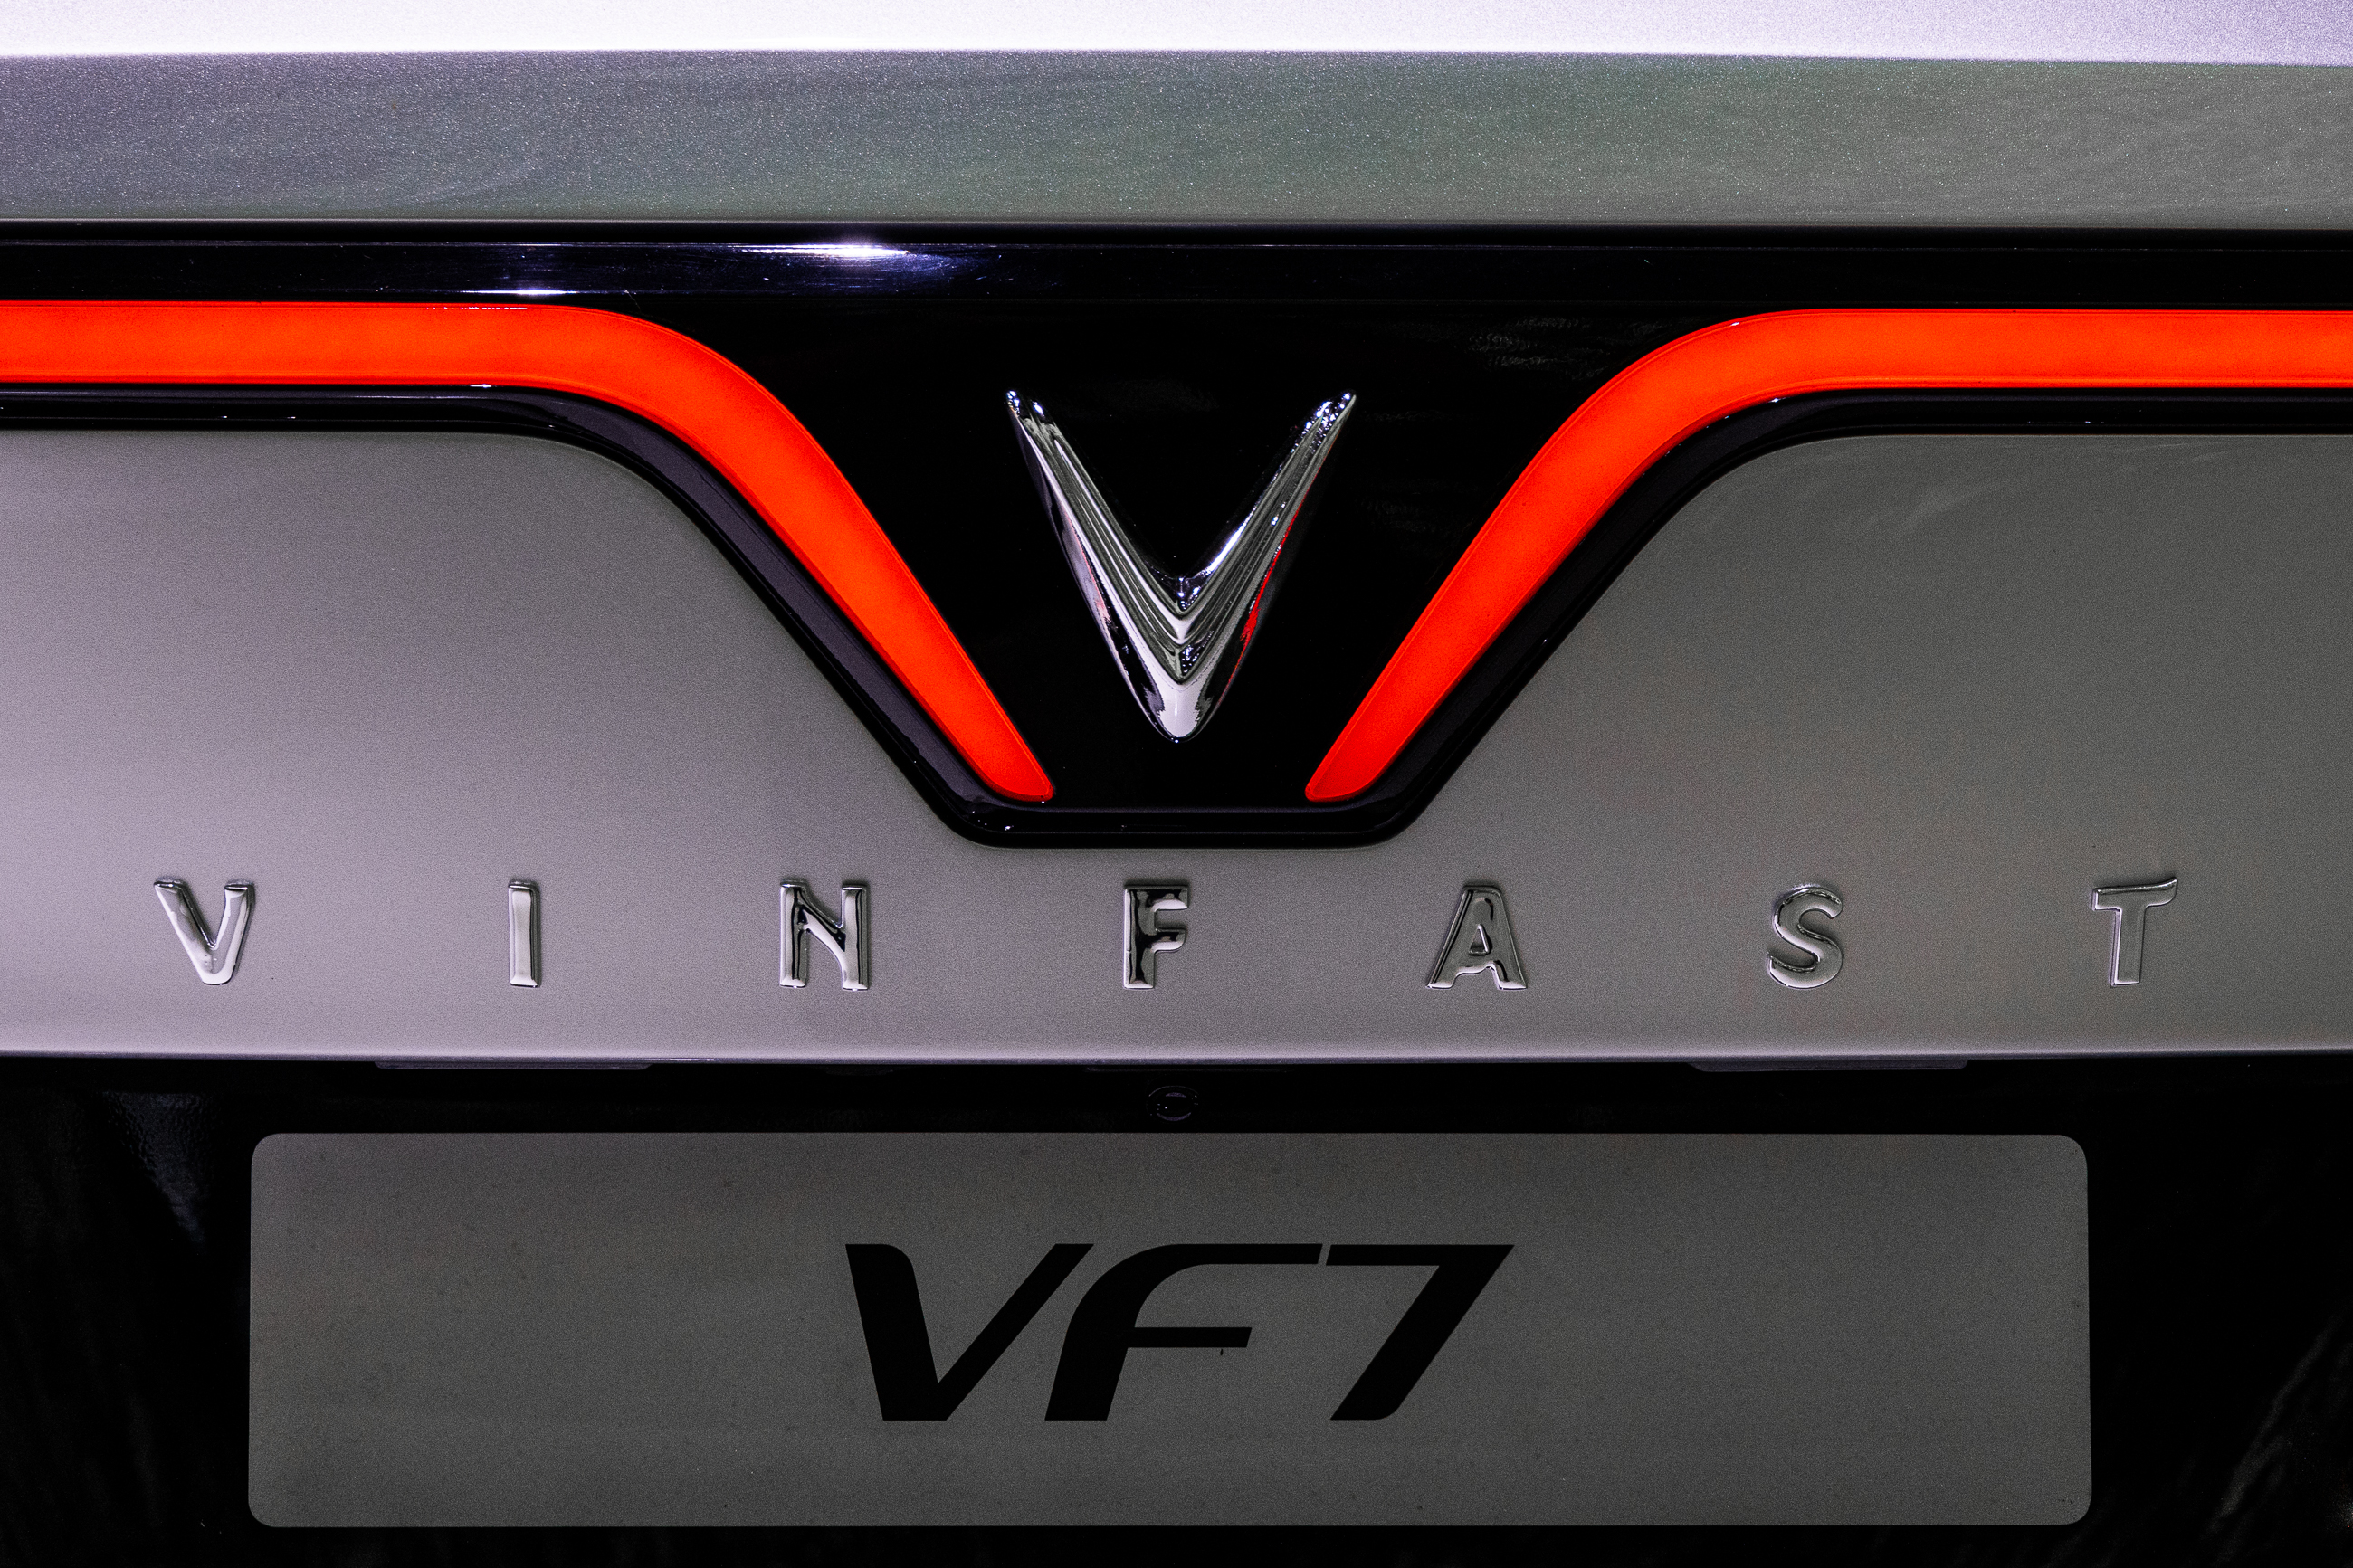 Cận cảnh VinFast VF7 - Mẫu Crossover chạy điện hoàn toàn mới 6n9a7200.jpg